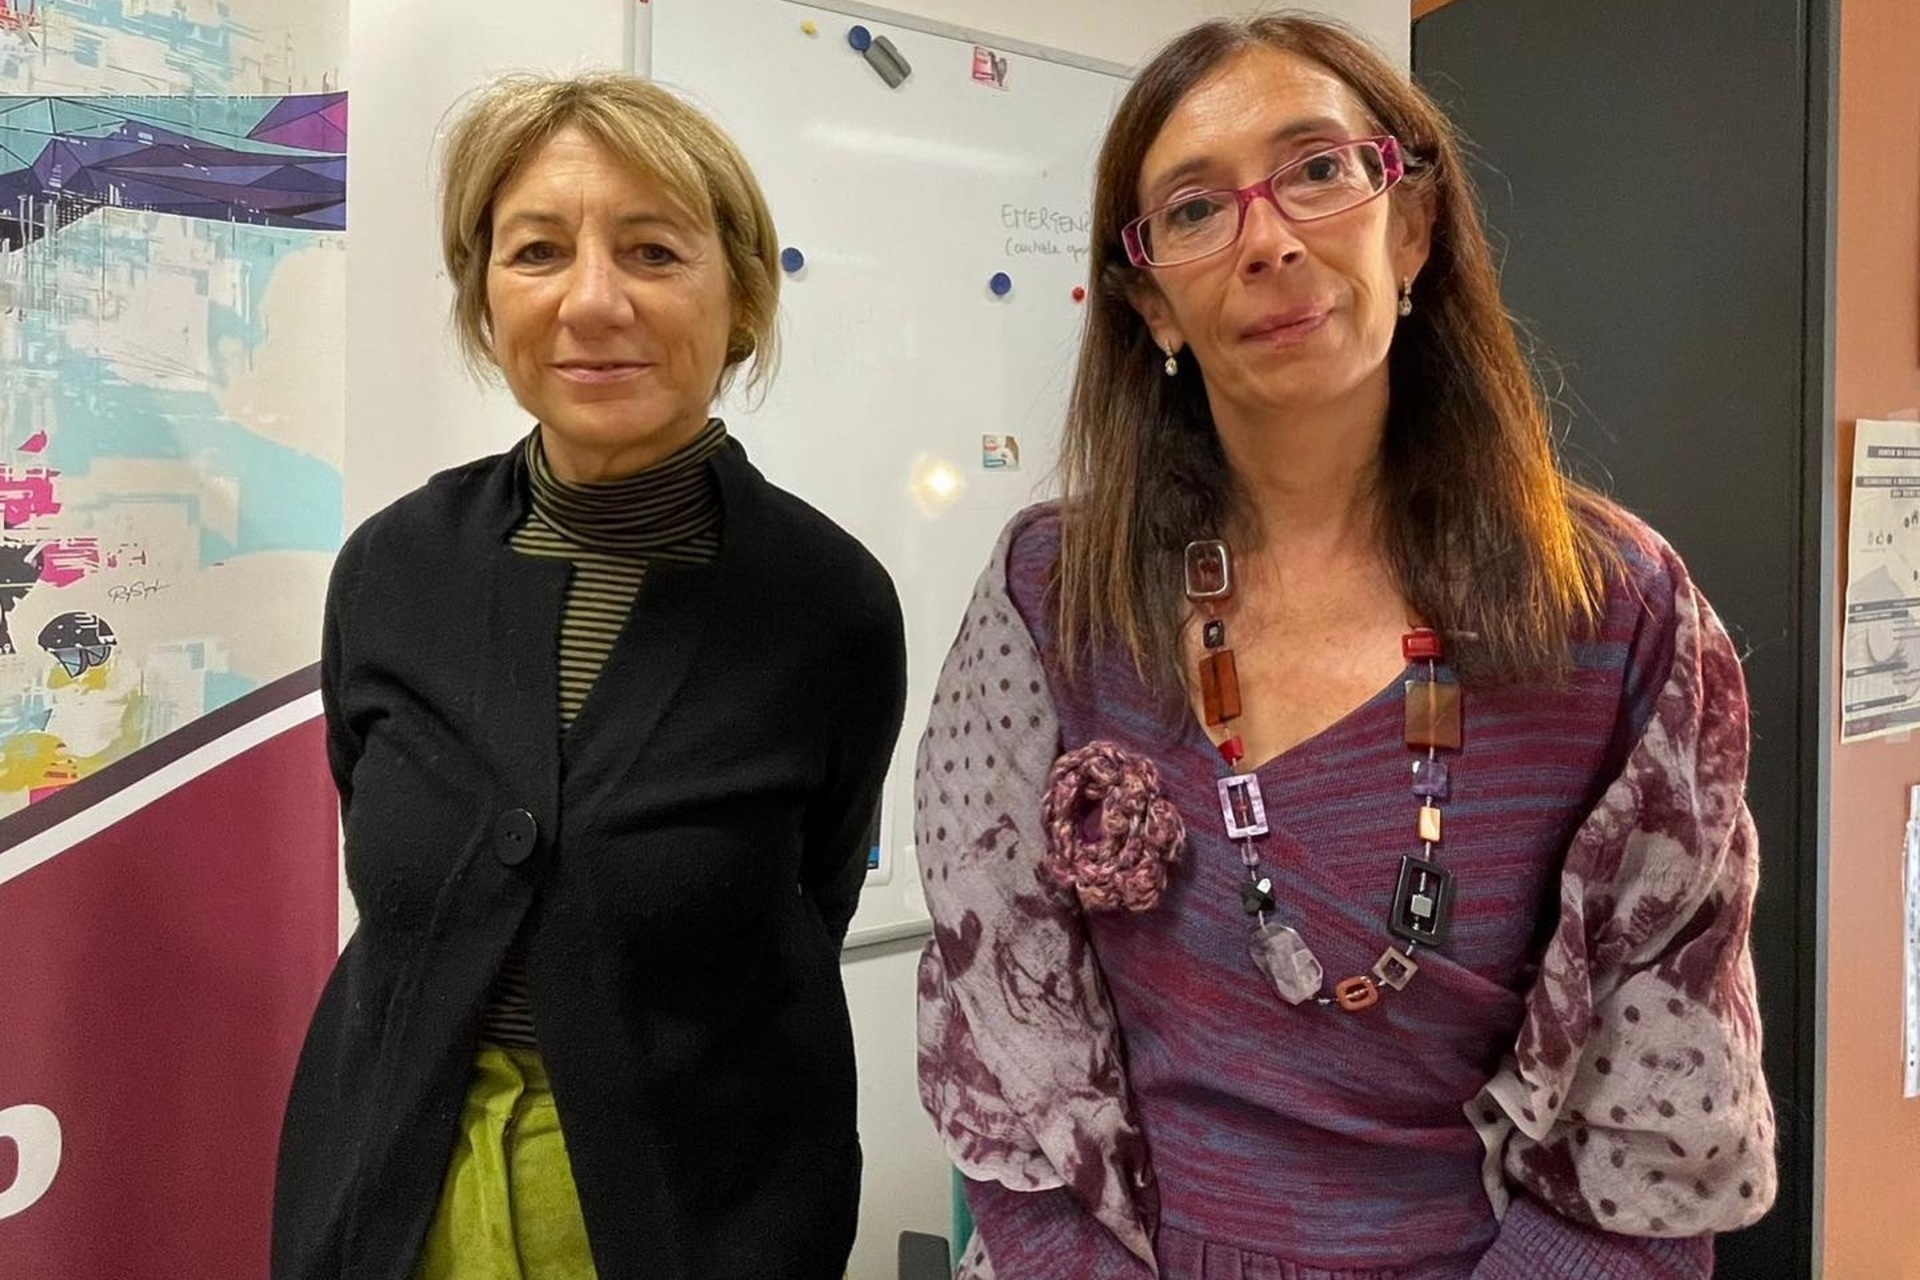 ArcheoVerso: Giovanna Barni, dyrektor generalny ds. innowacji i rozwoju CoopCulture, oraz Paola Buzi, dyrektor Centrum Badawczego DigiLab Uniwersytetu Sapienza w Rzymie, podpisały umowę, która rozpoczyna projekt kulturalny